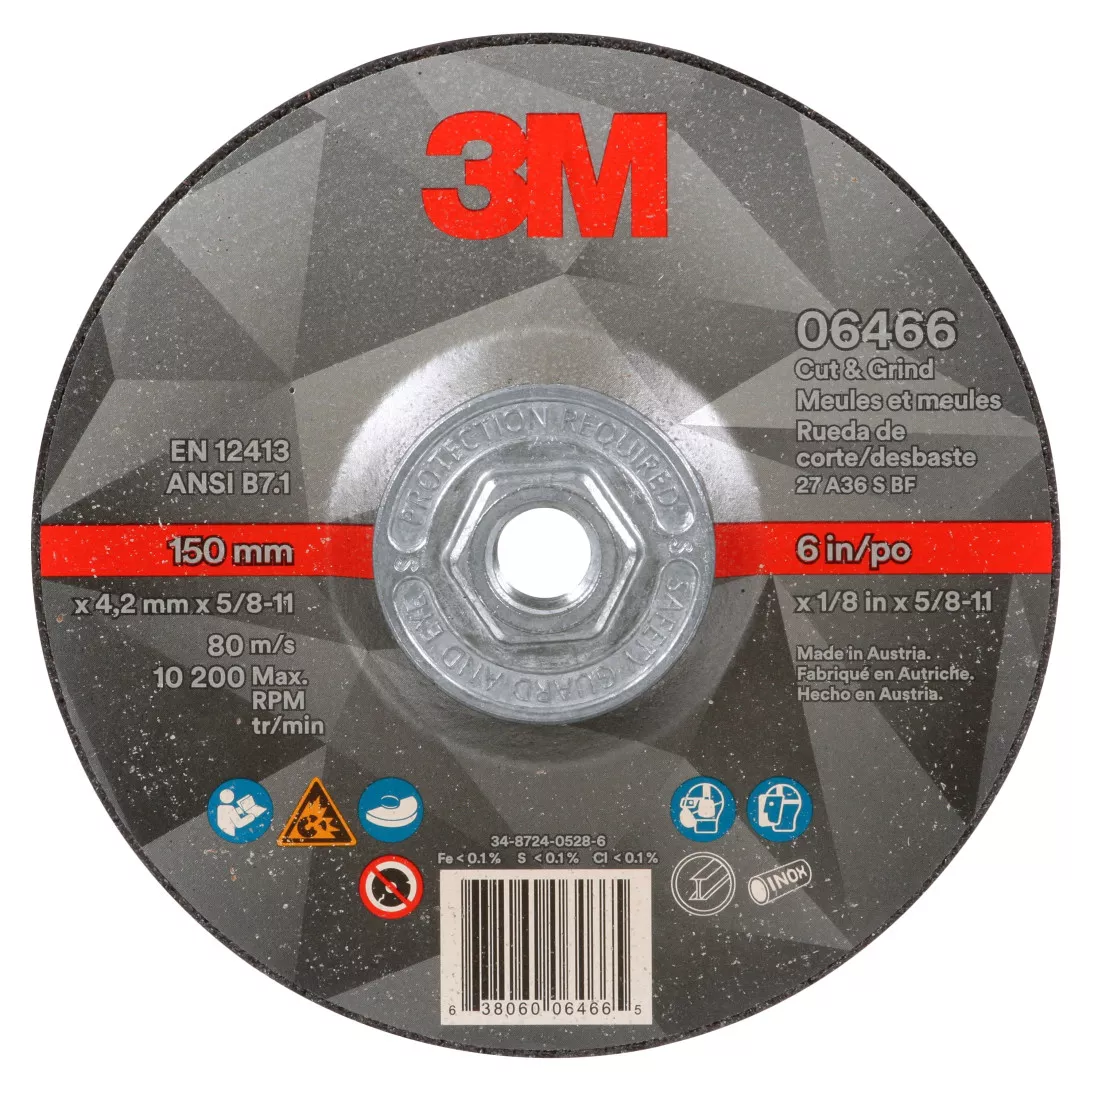 3M™ Cut & Grind Wheel, 06466, Type 27, 6 in x 1/8 in x 5/8